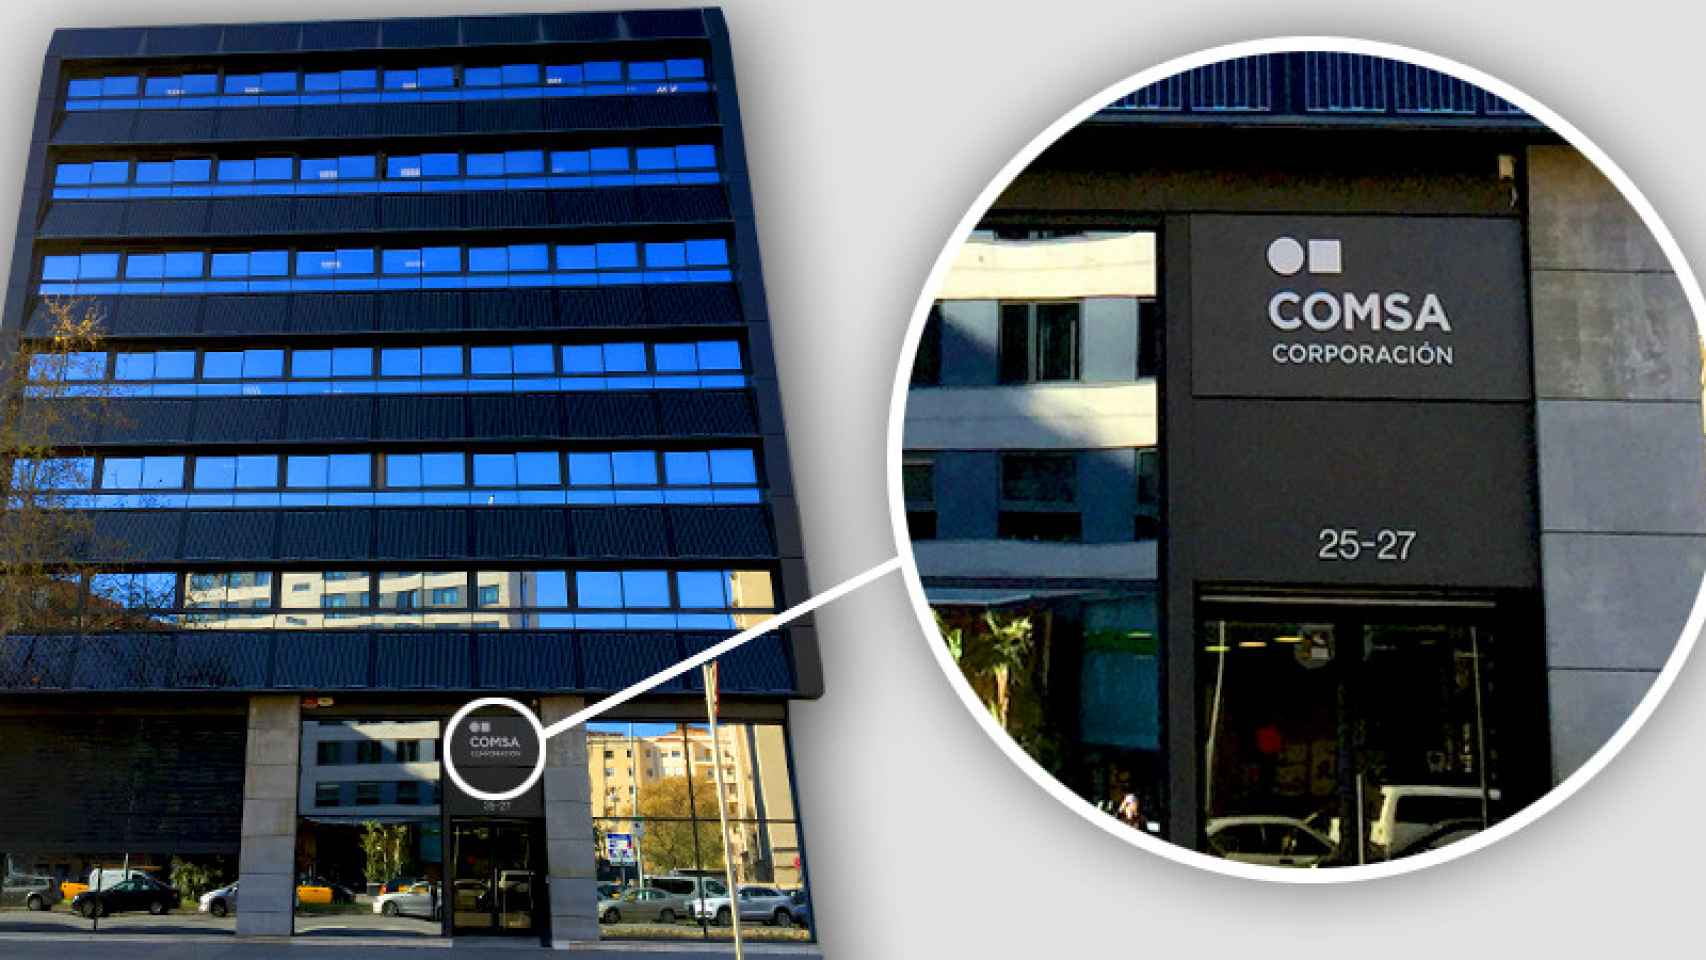 La sede central de Comsa Emte en Barcelona ha cambiado el rótulo: ahora es Comsa Corporación.